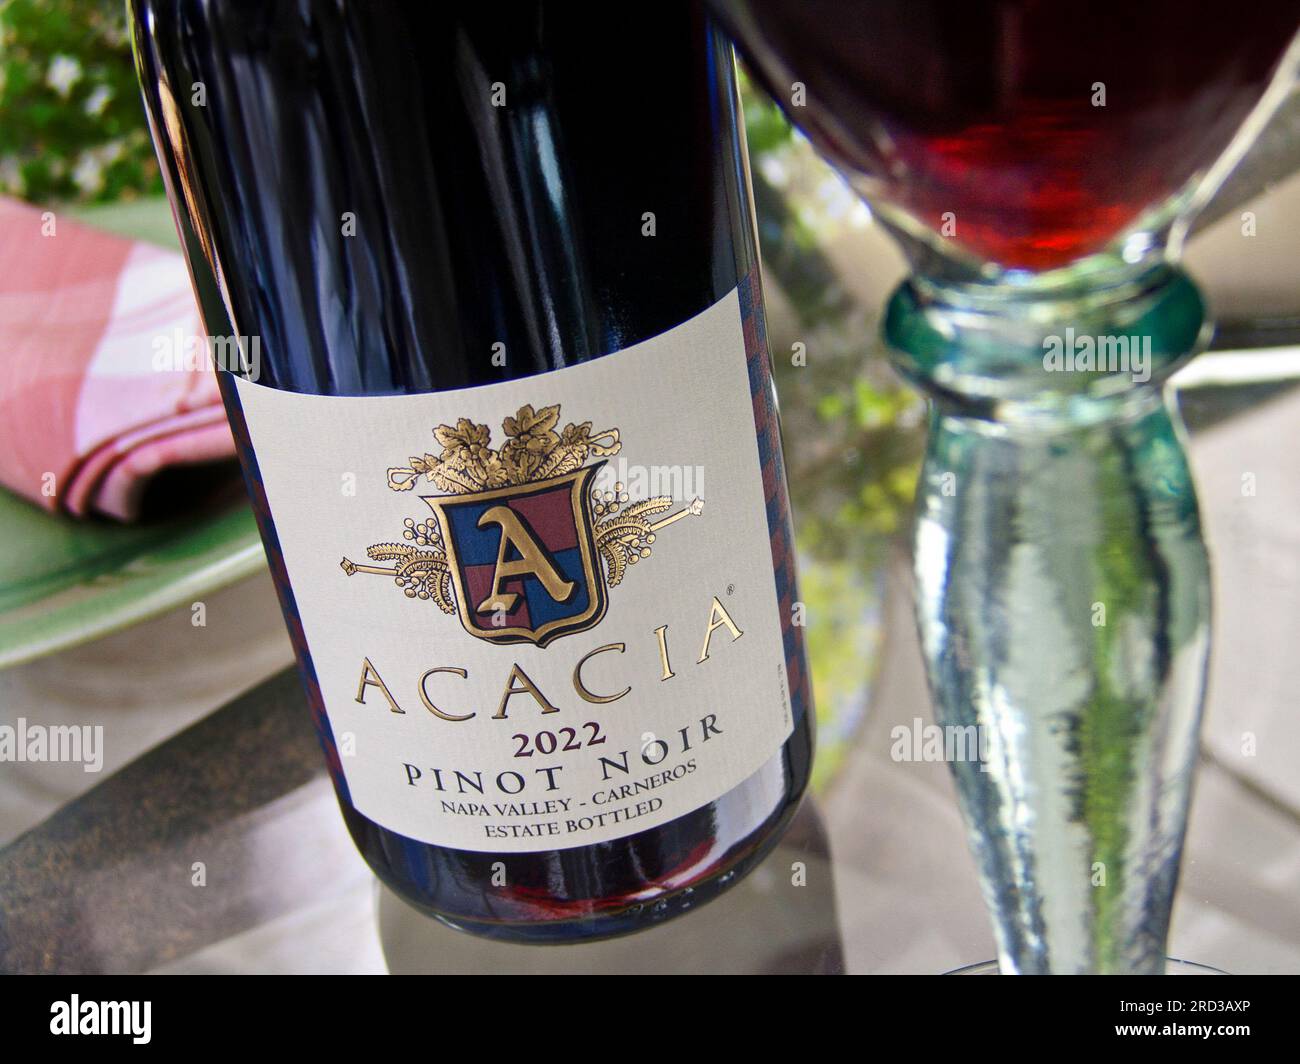 CALIFORNIA NAPA VALLEY Acacia 2022 bottiglia di Pinot Nero e bicchiere di vino rosso Carneros su un tavolo in vetro floreale all'aperto nella Napa Valley California USA Foto Stock